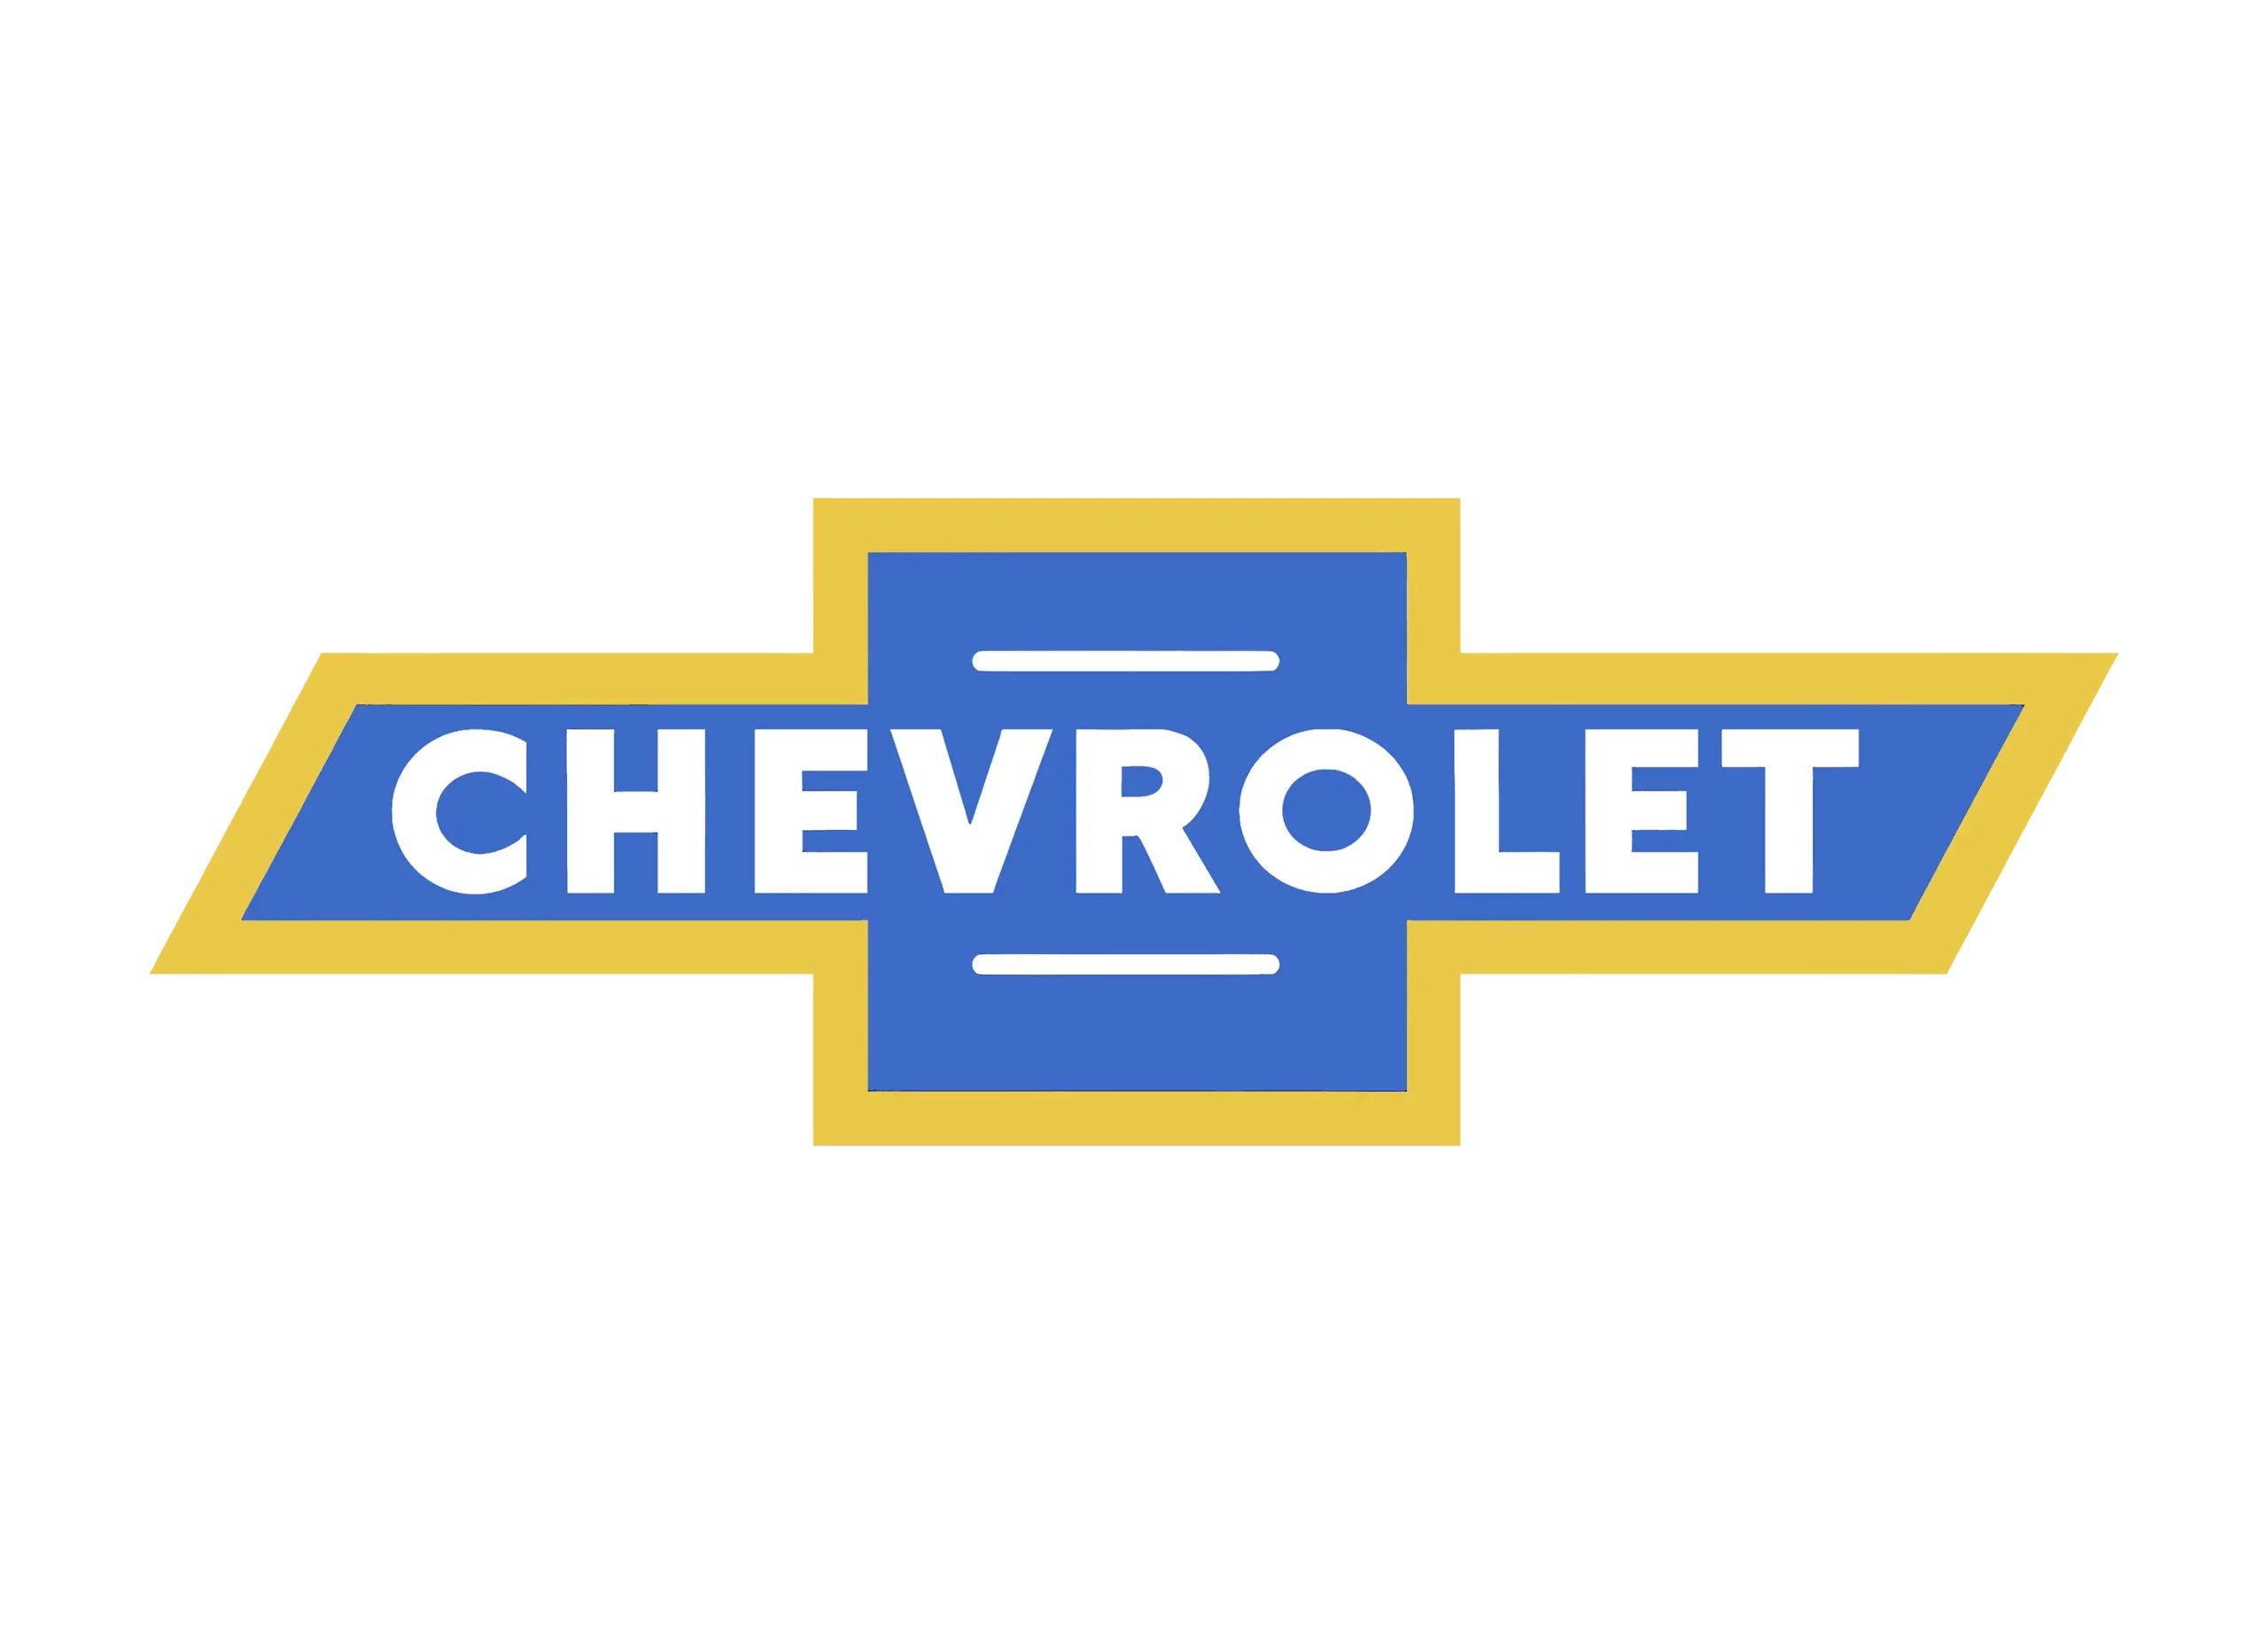 Chevrolet logo 1940-1950